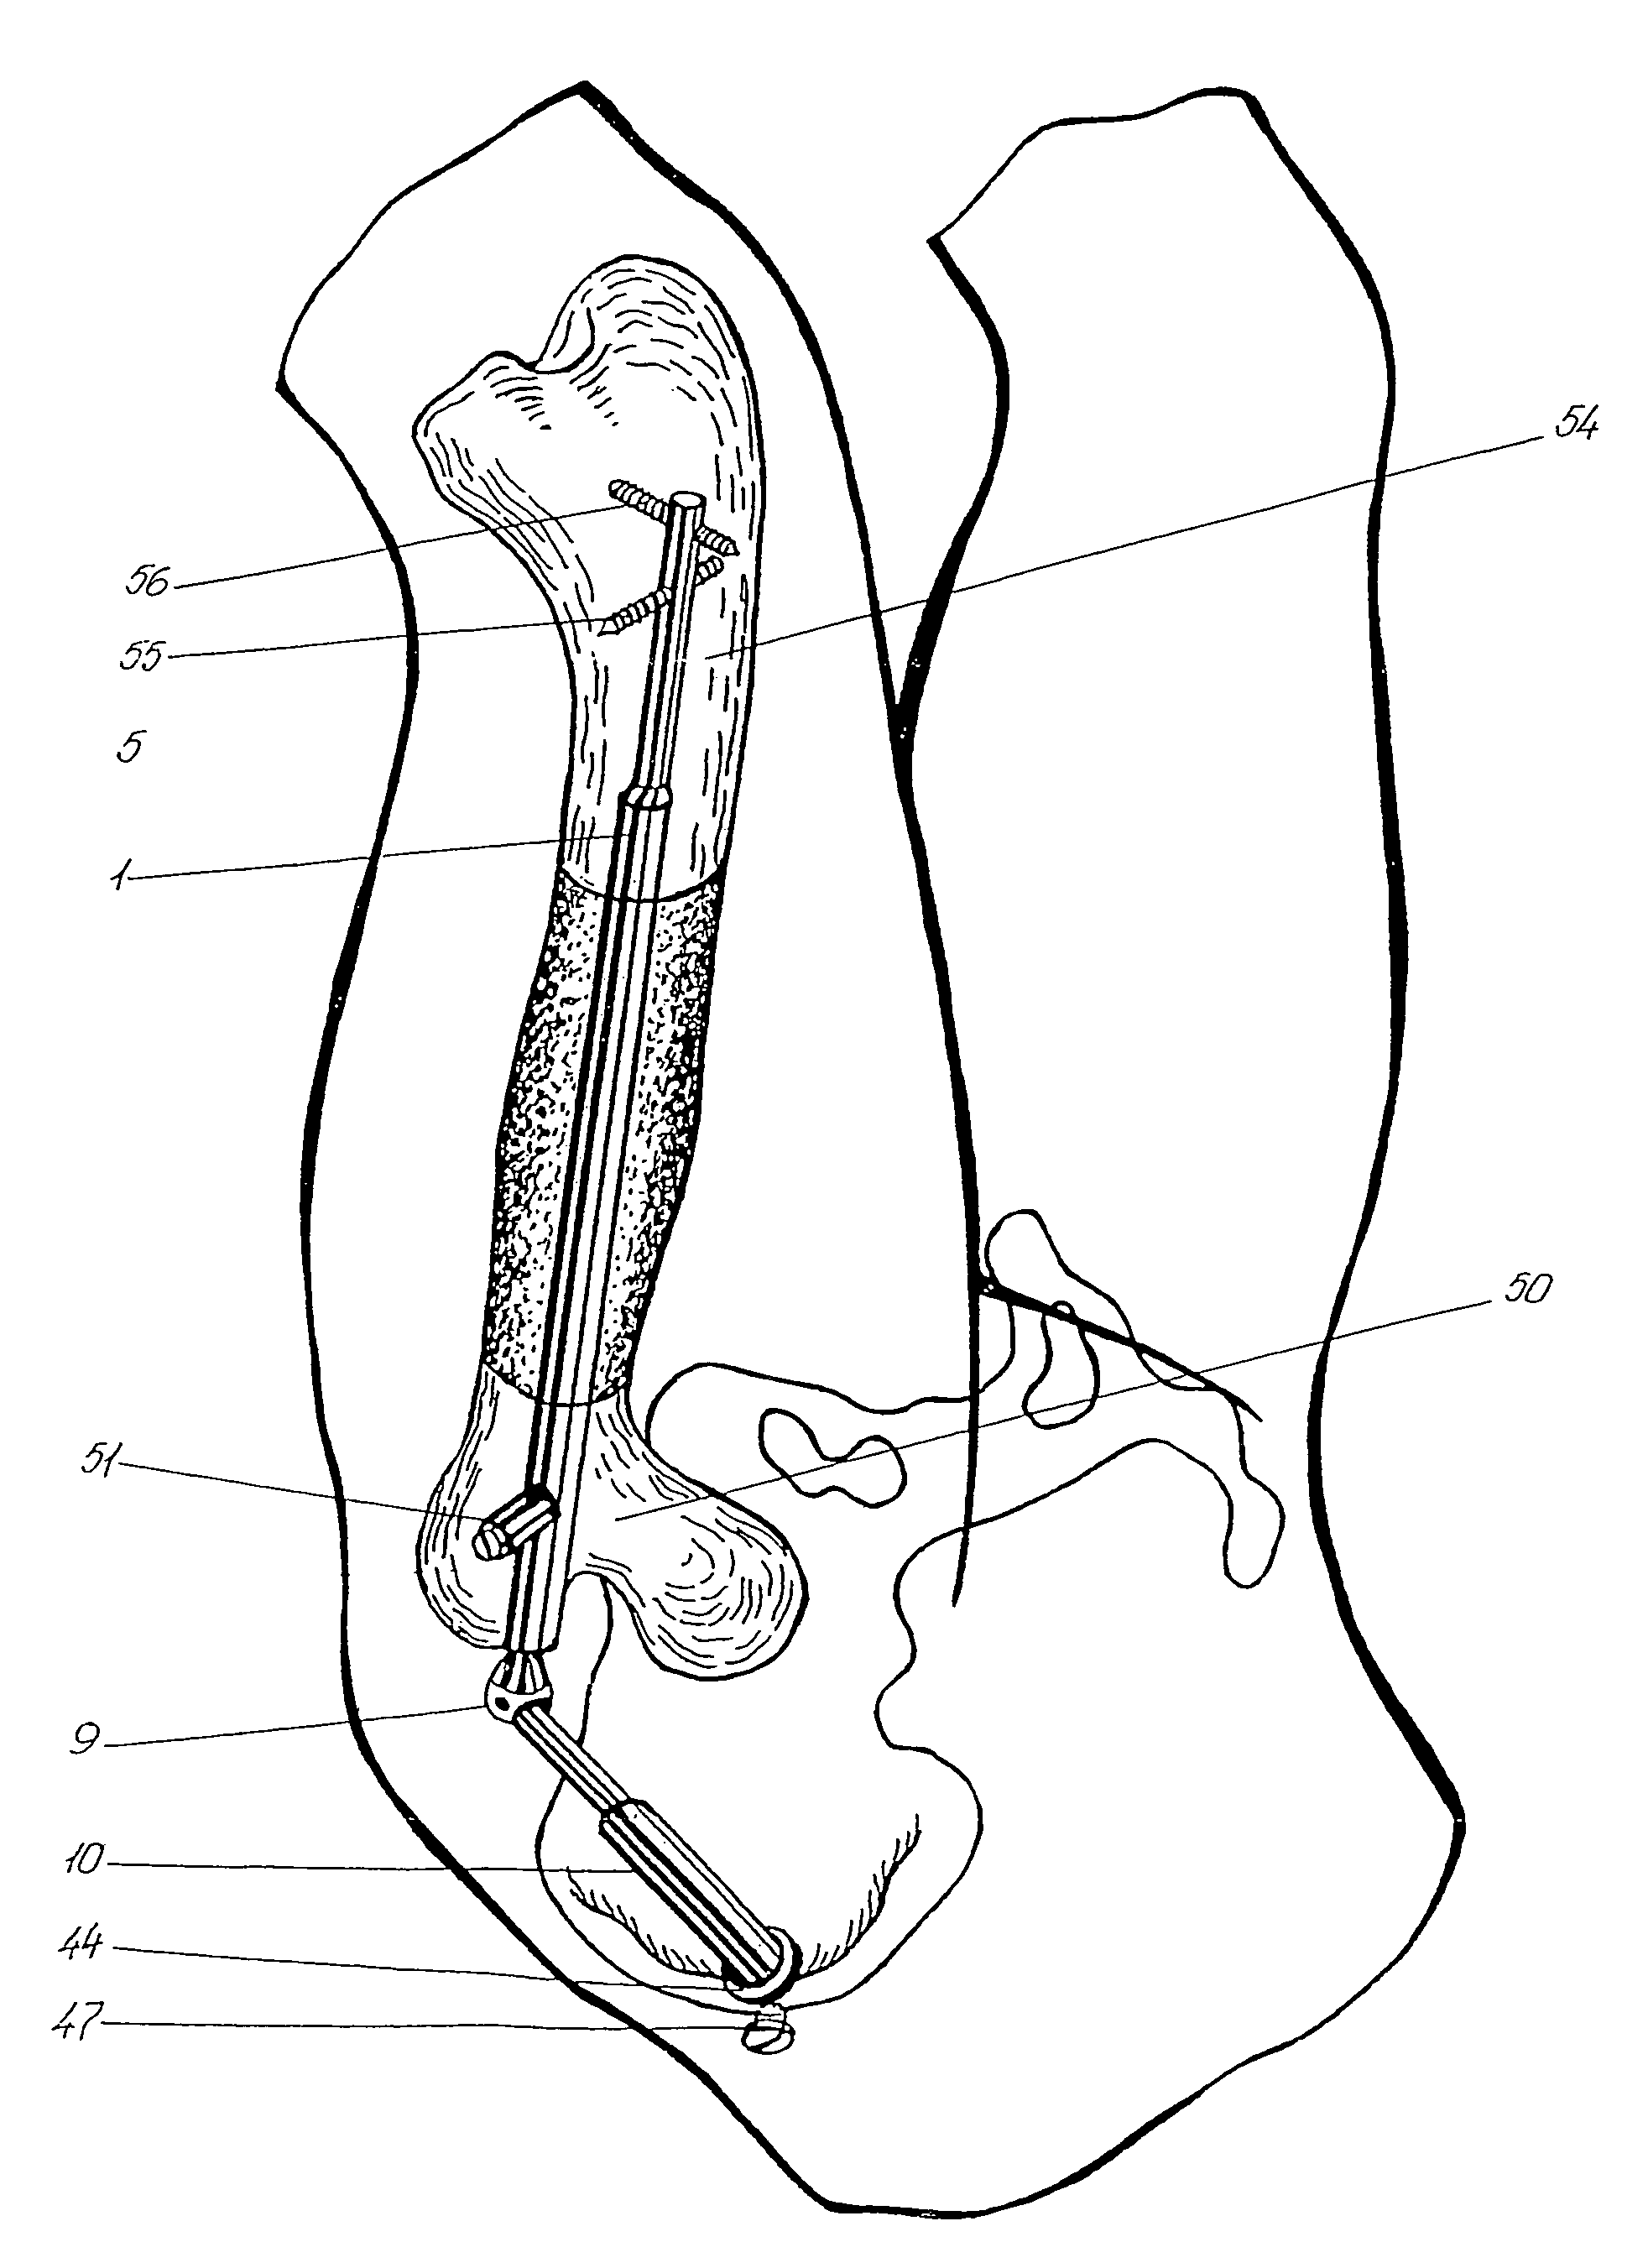 Bliskunov device for elongating long bones